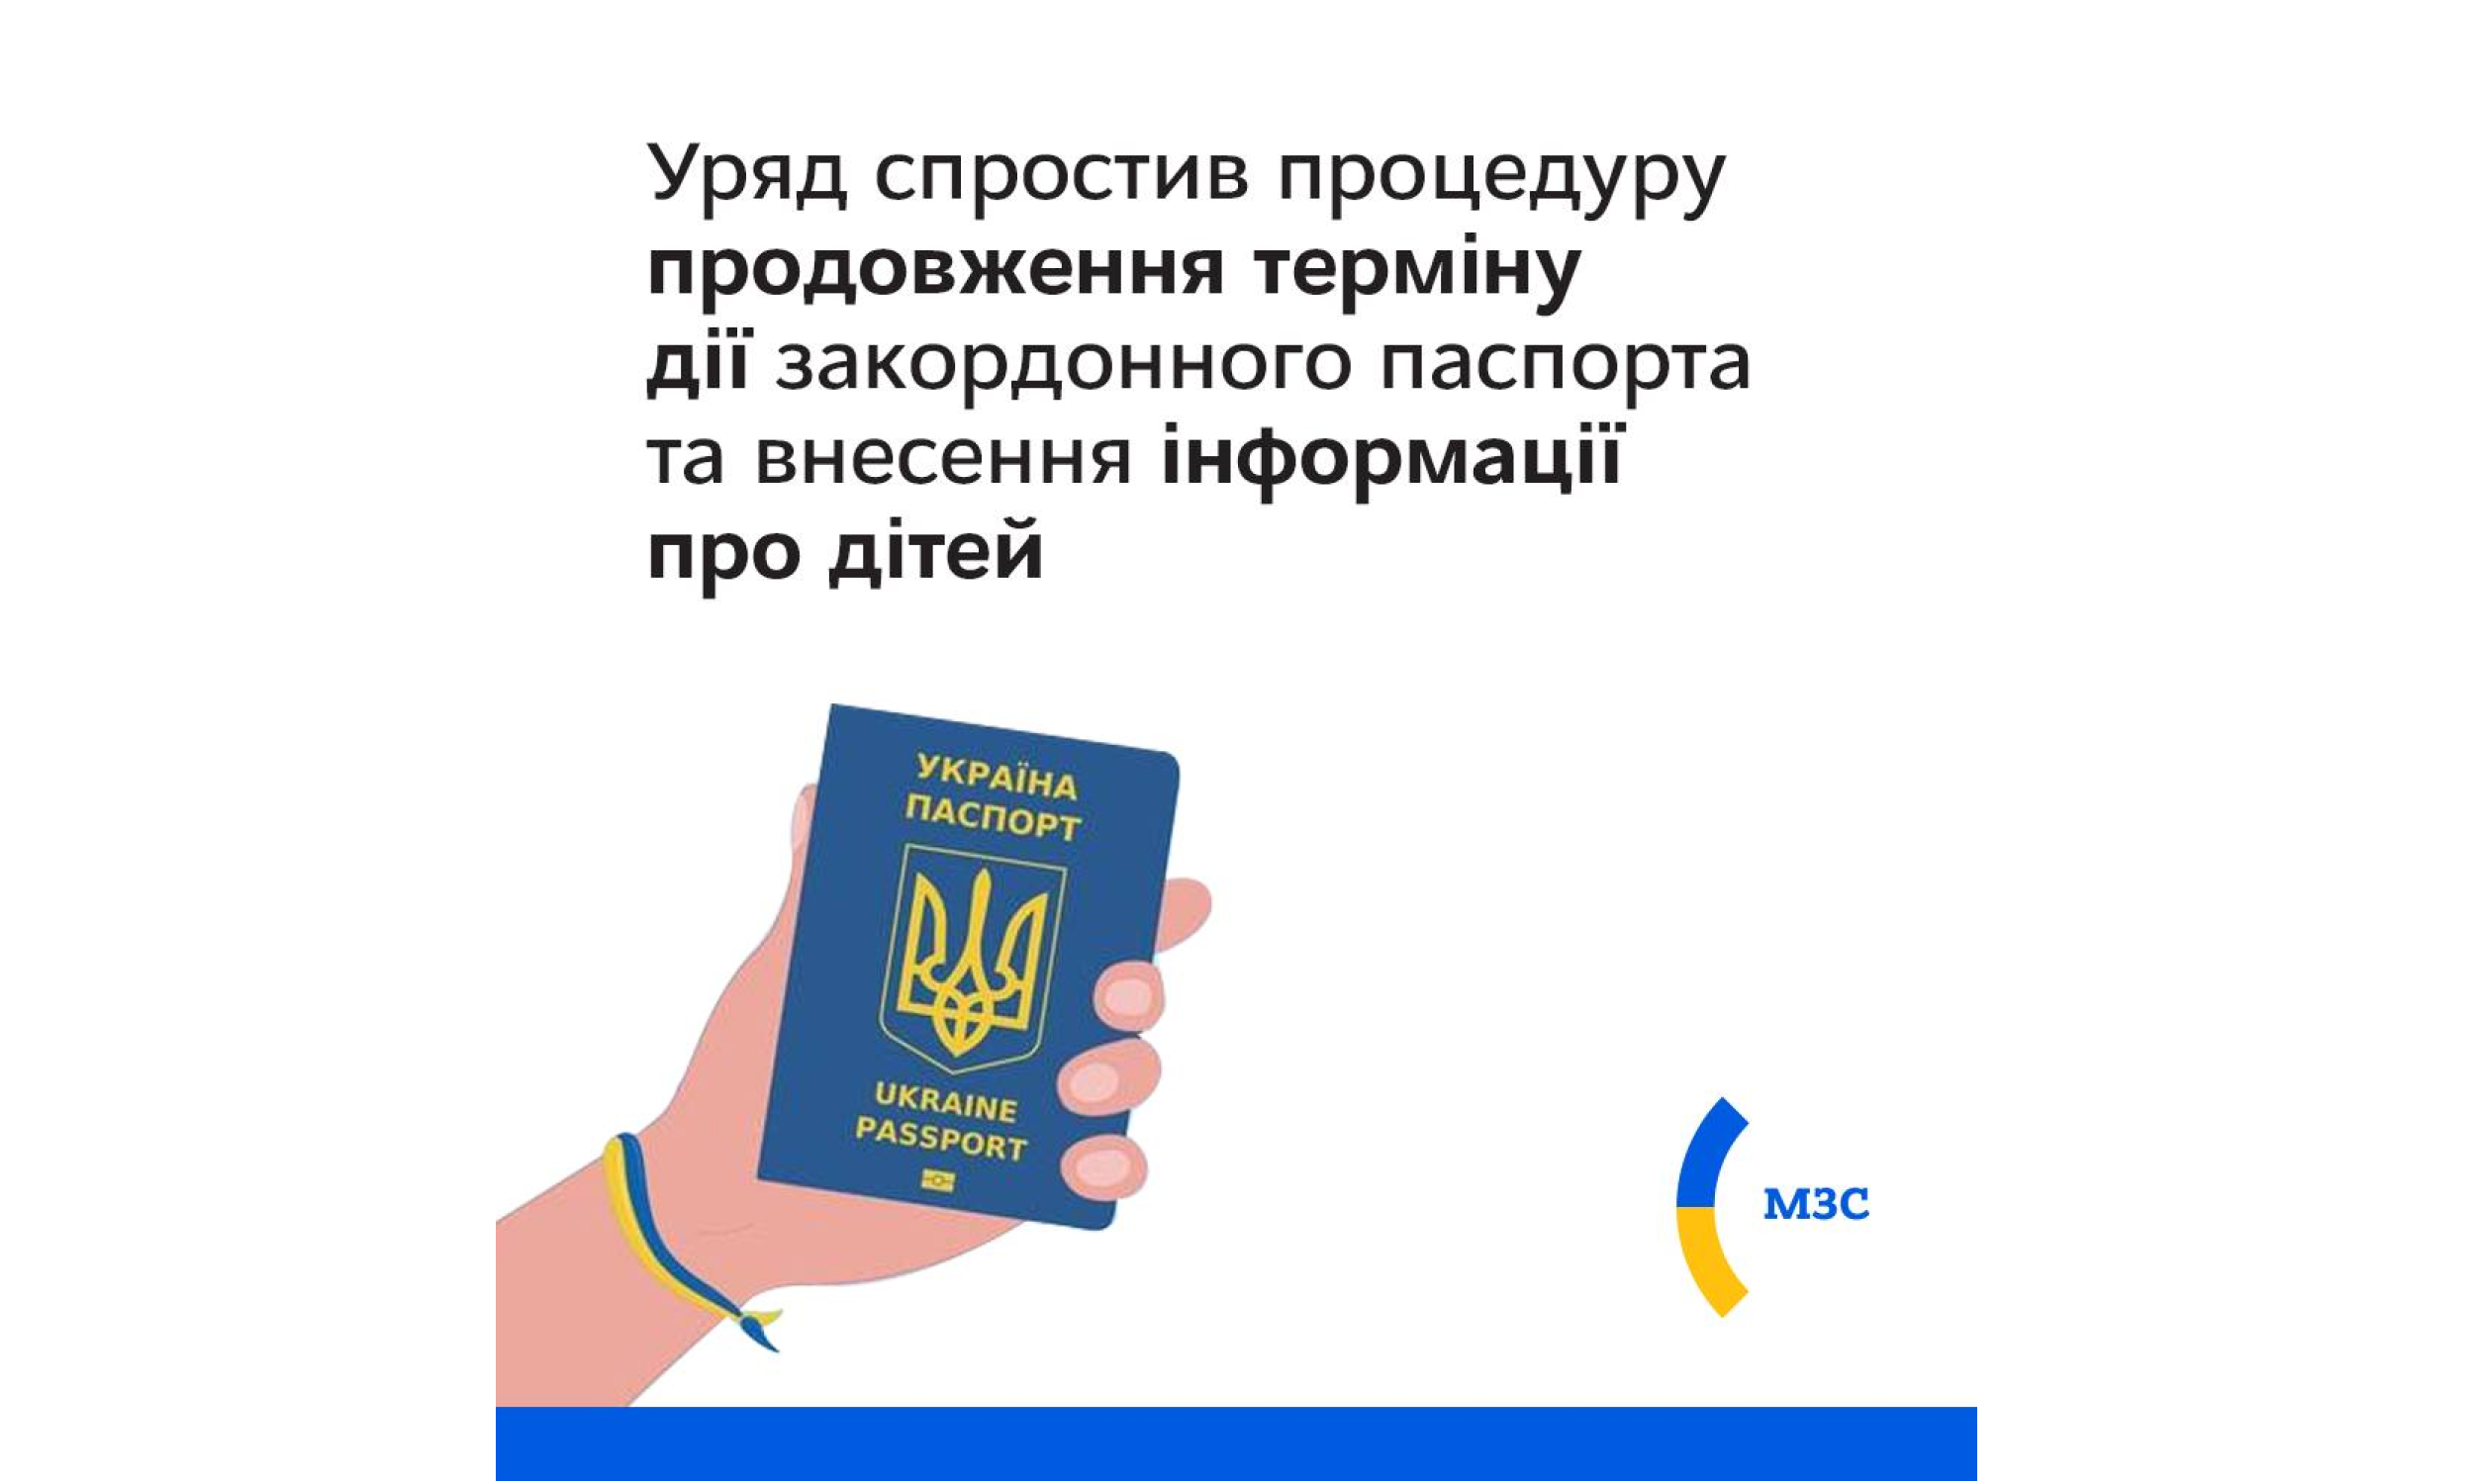 Уряд спростив процедуру продовження терміну дії закордонного паспорта громадянина України та внесення інформації про дітей